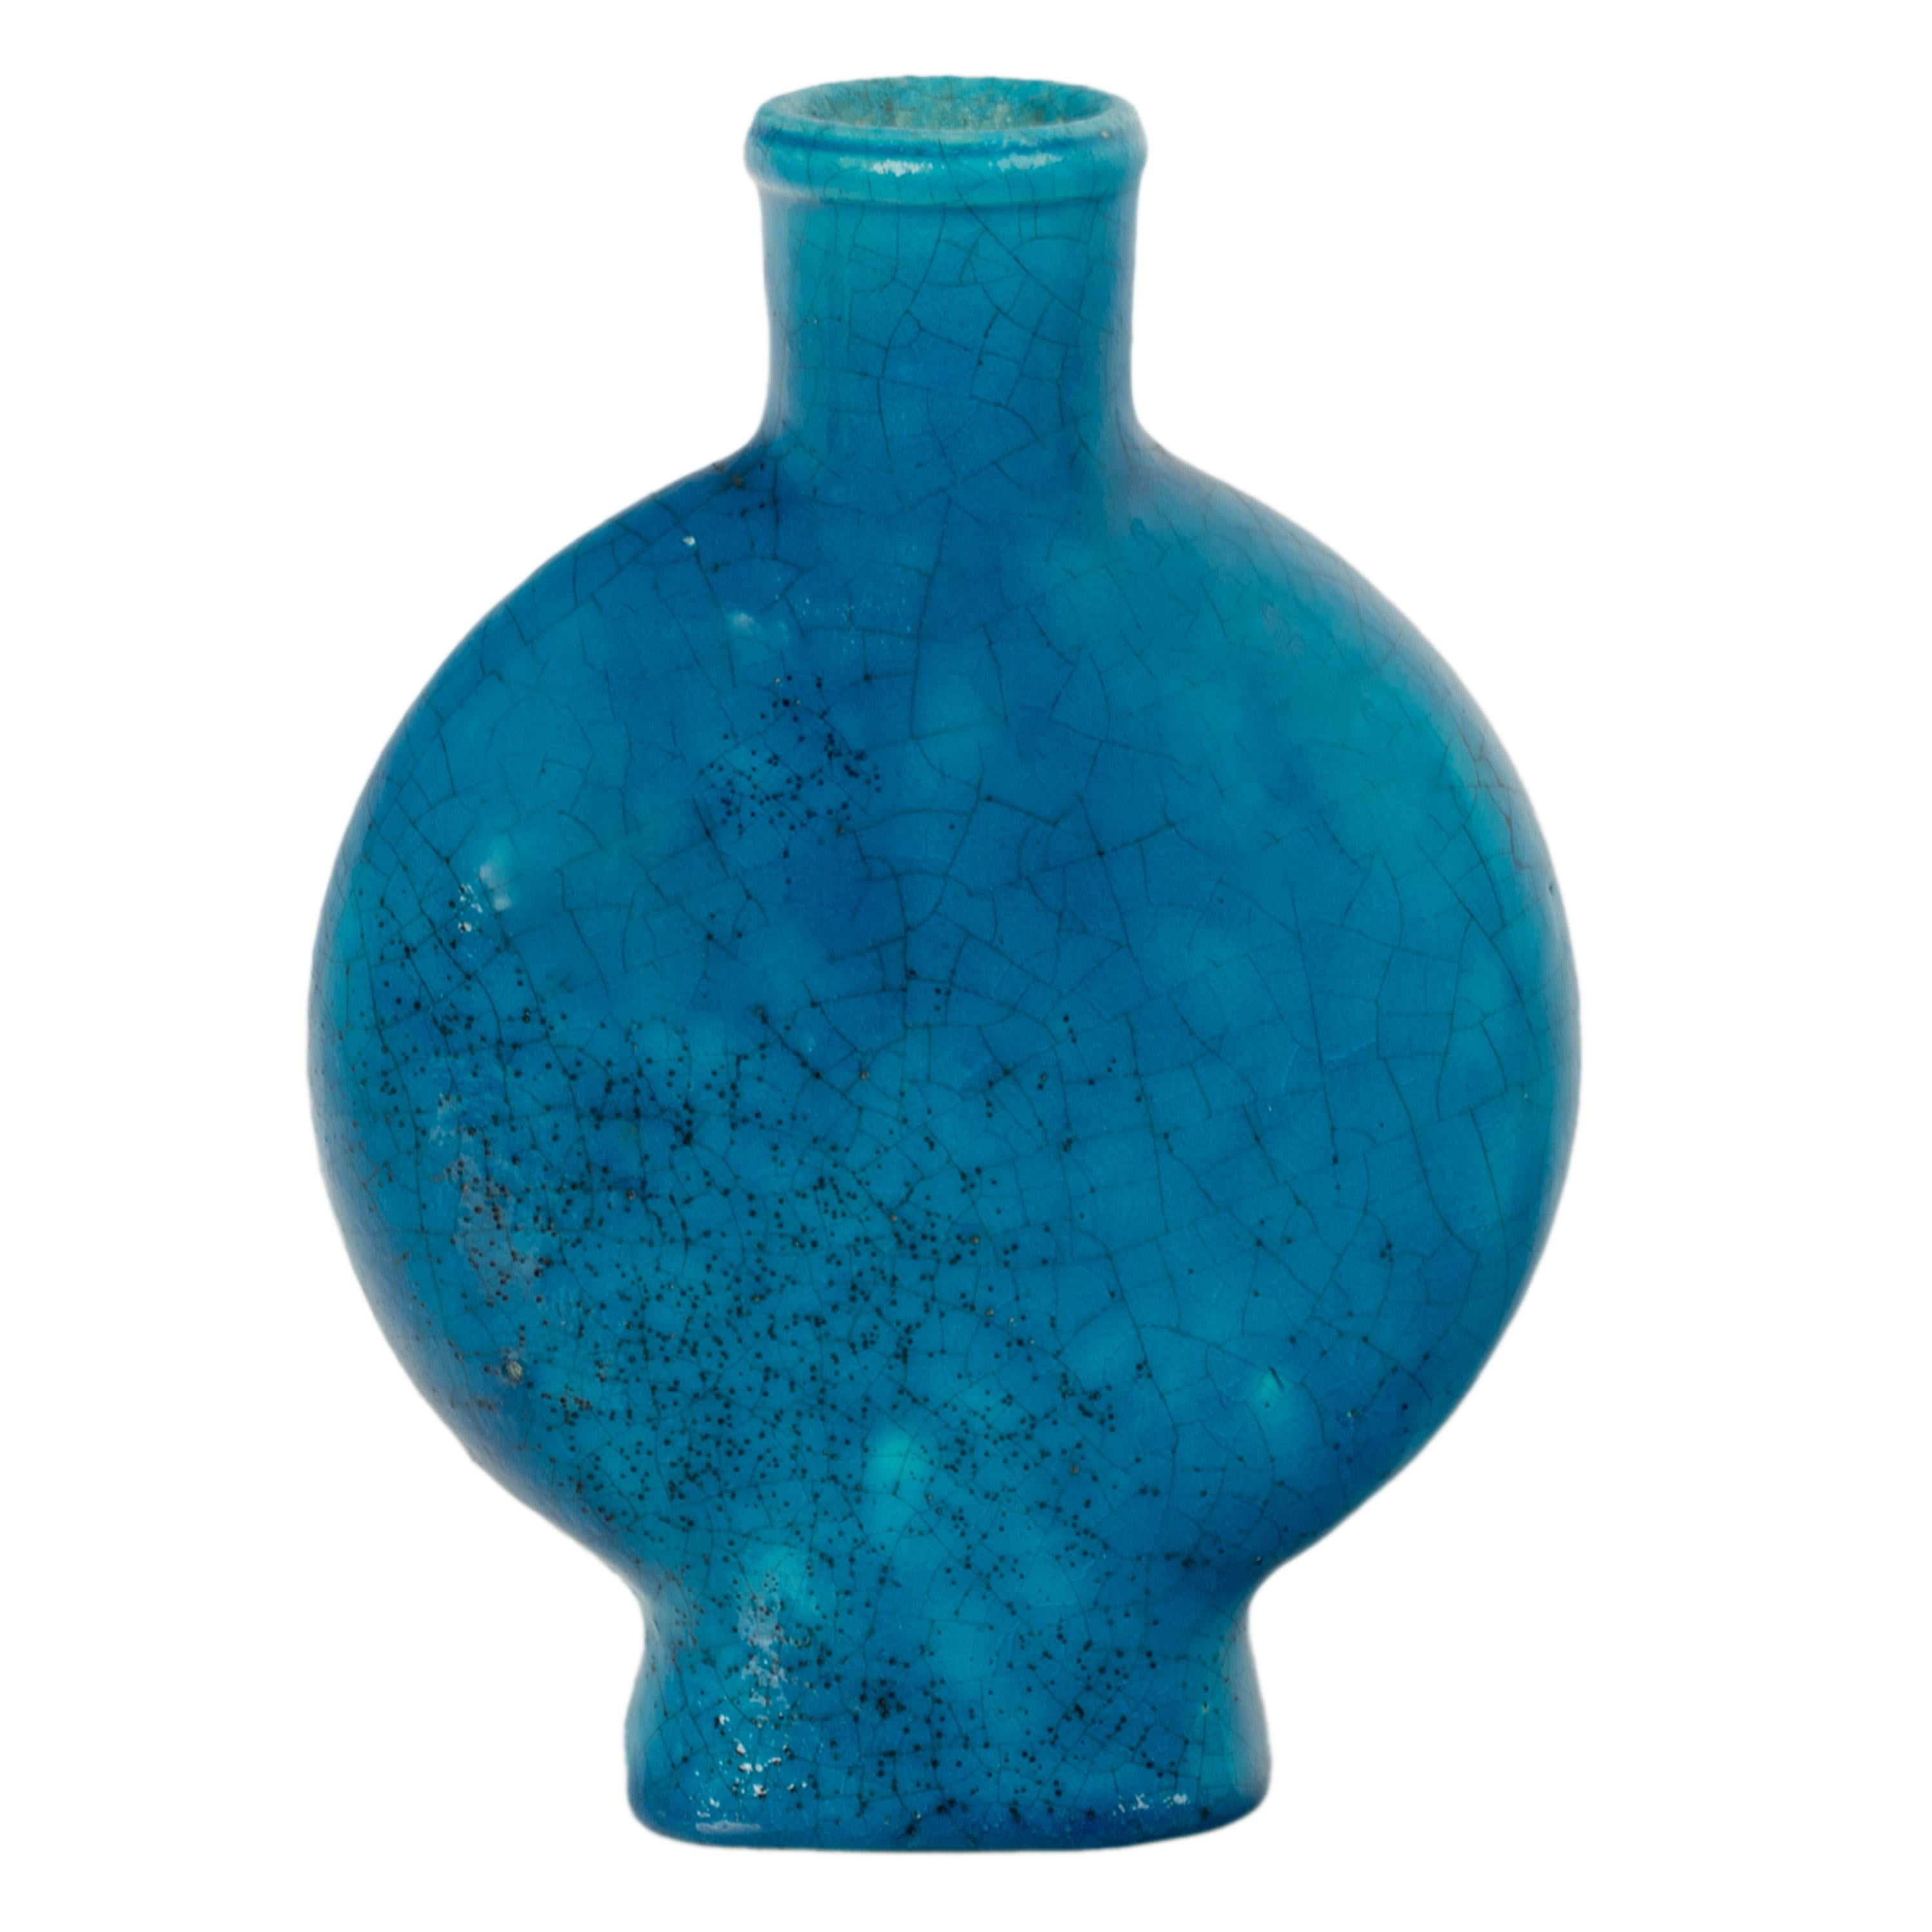 Début du 20ème siècle Ancien vase de poterie Art déco français bleu turquoise signé Edmond Lachenal, 1930 en vente